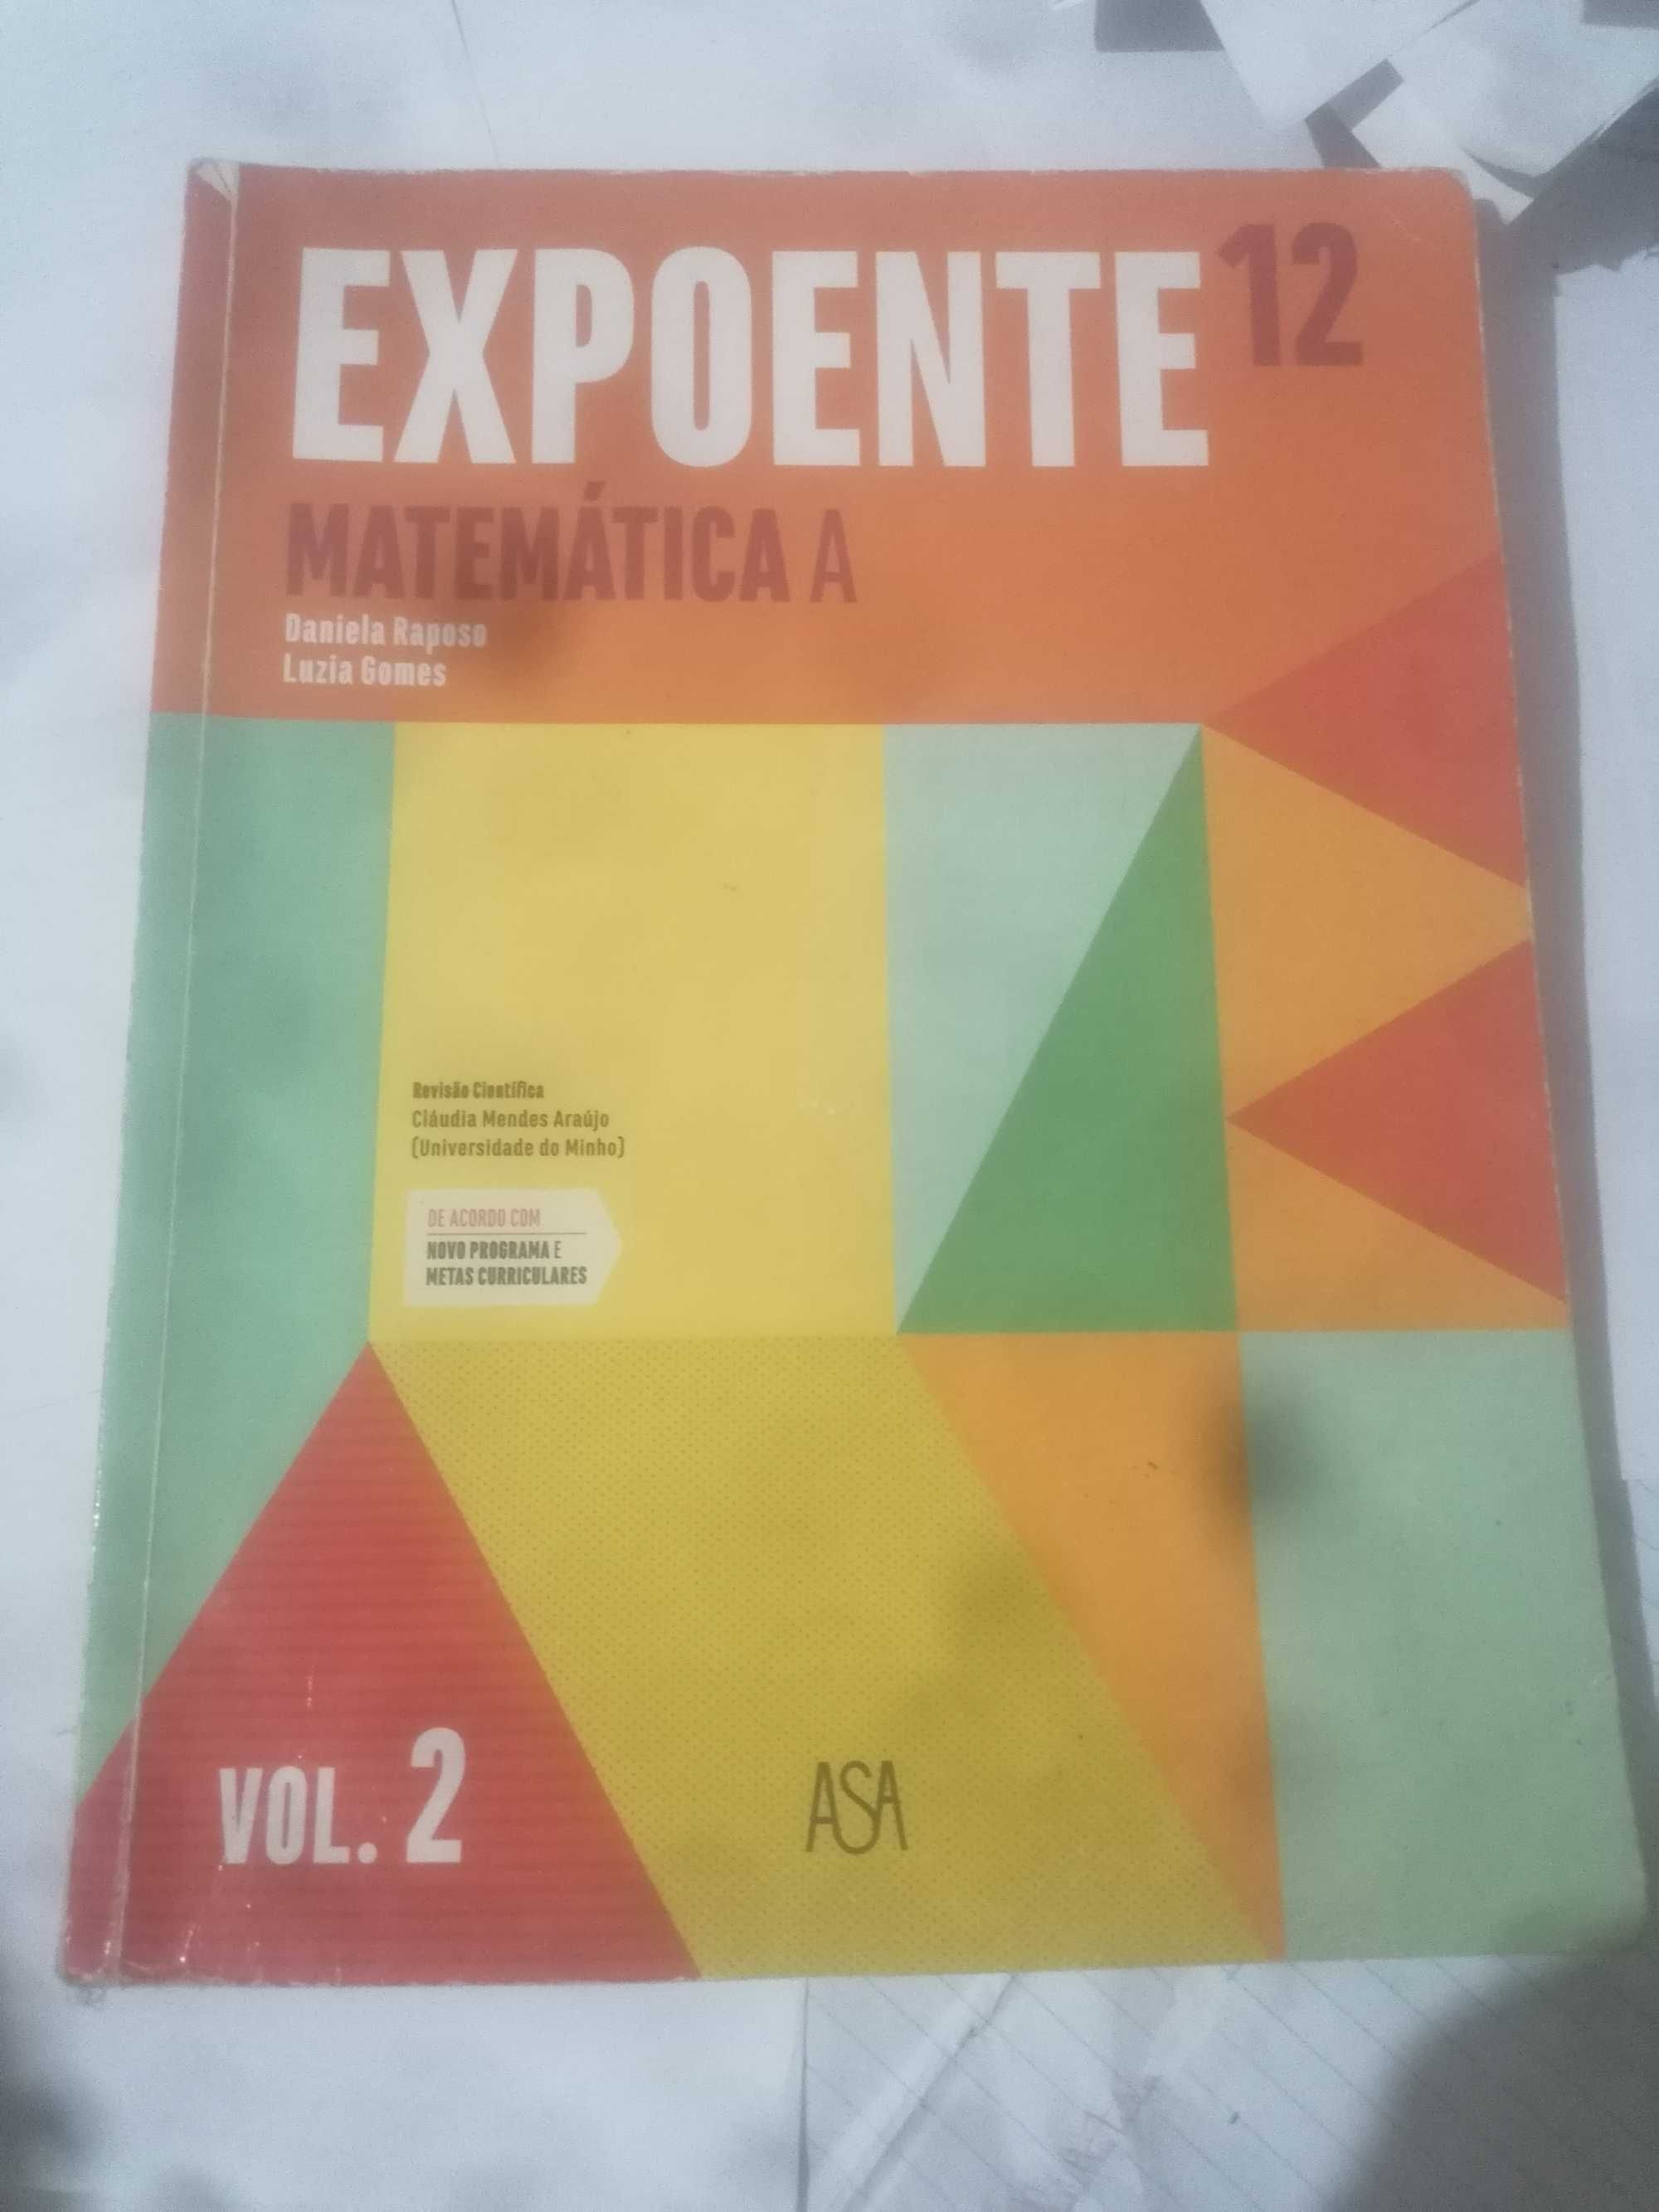 Livro de Matemática "Expoente 12" 12º Ano